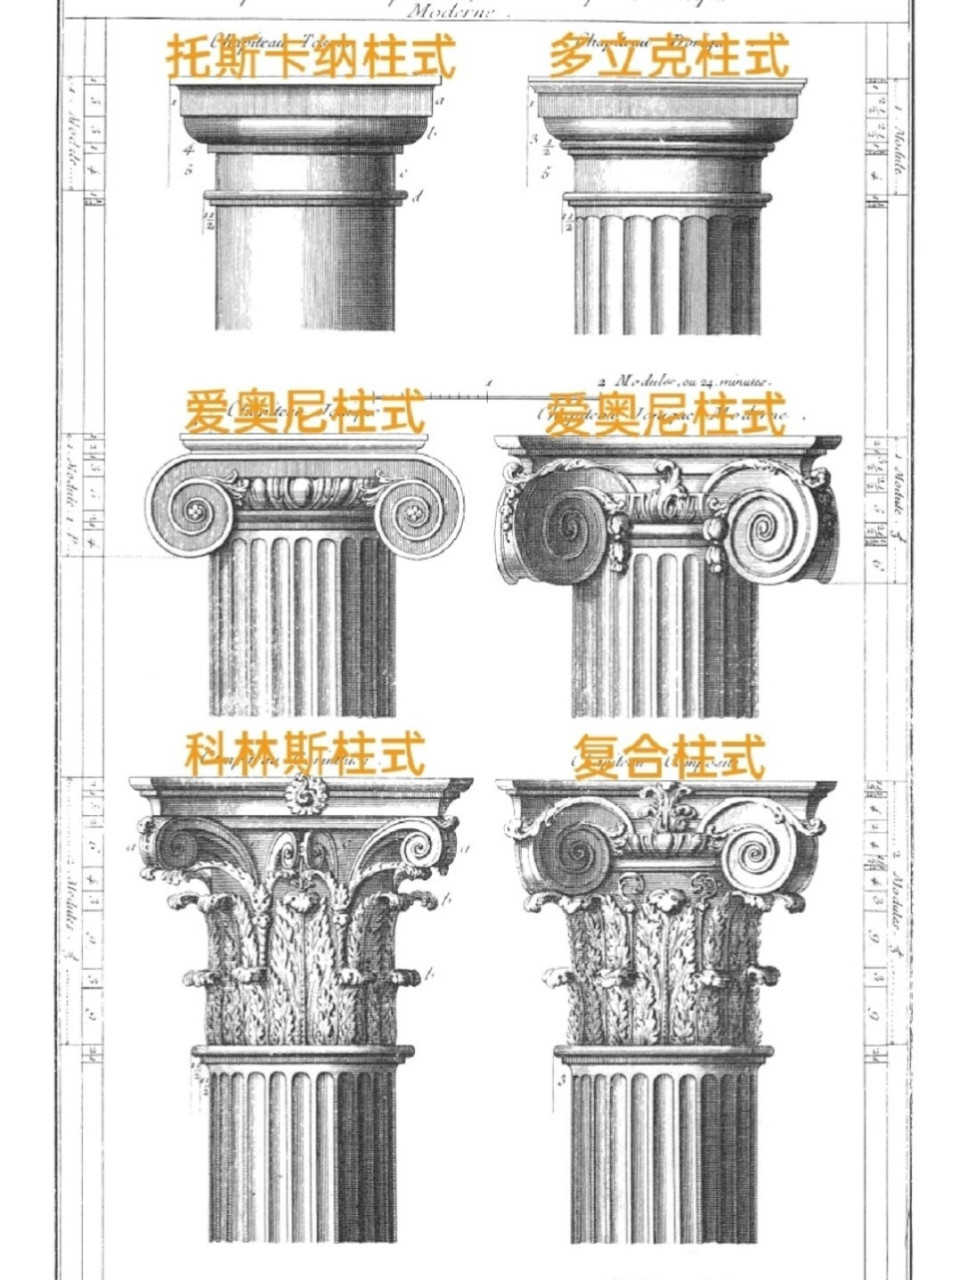 2 托斯卡纳柱式是对多立克柱式的重新诠释,柱身光滑没有凹槽